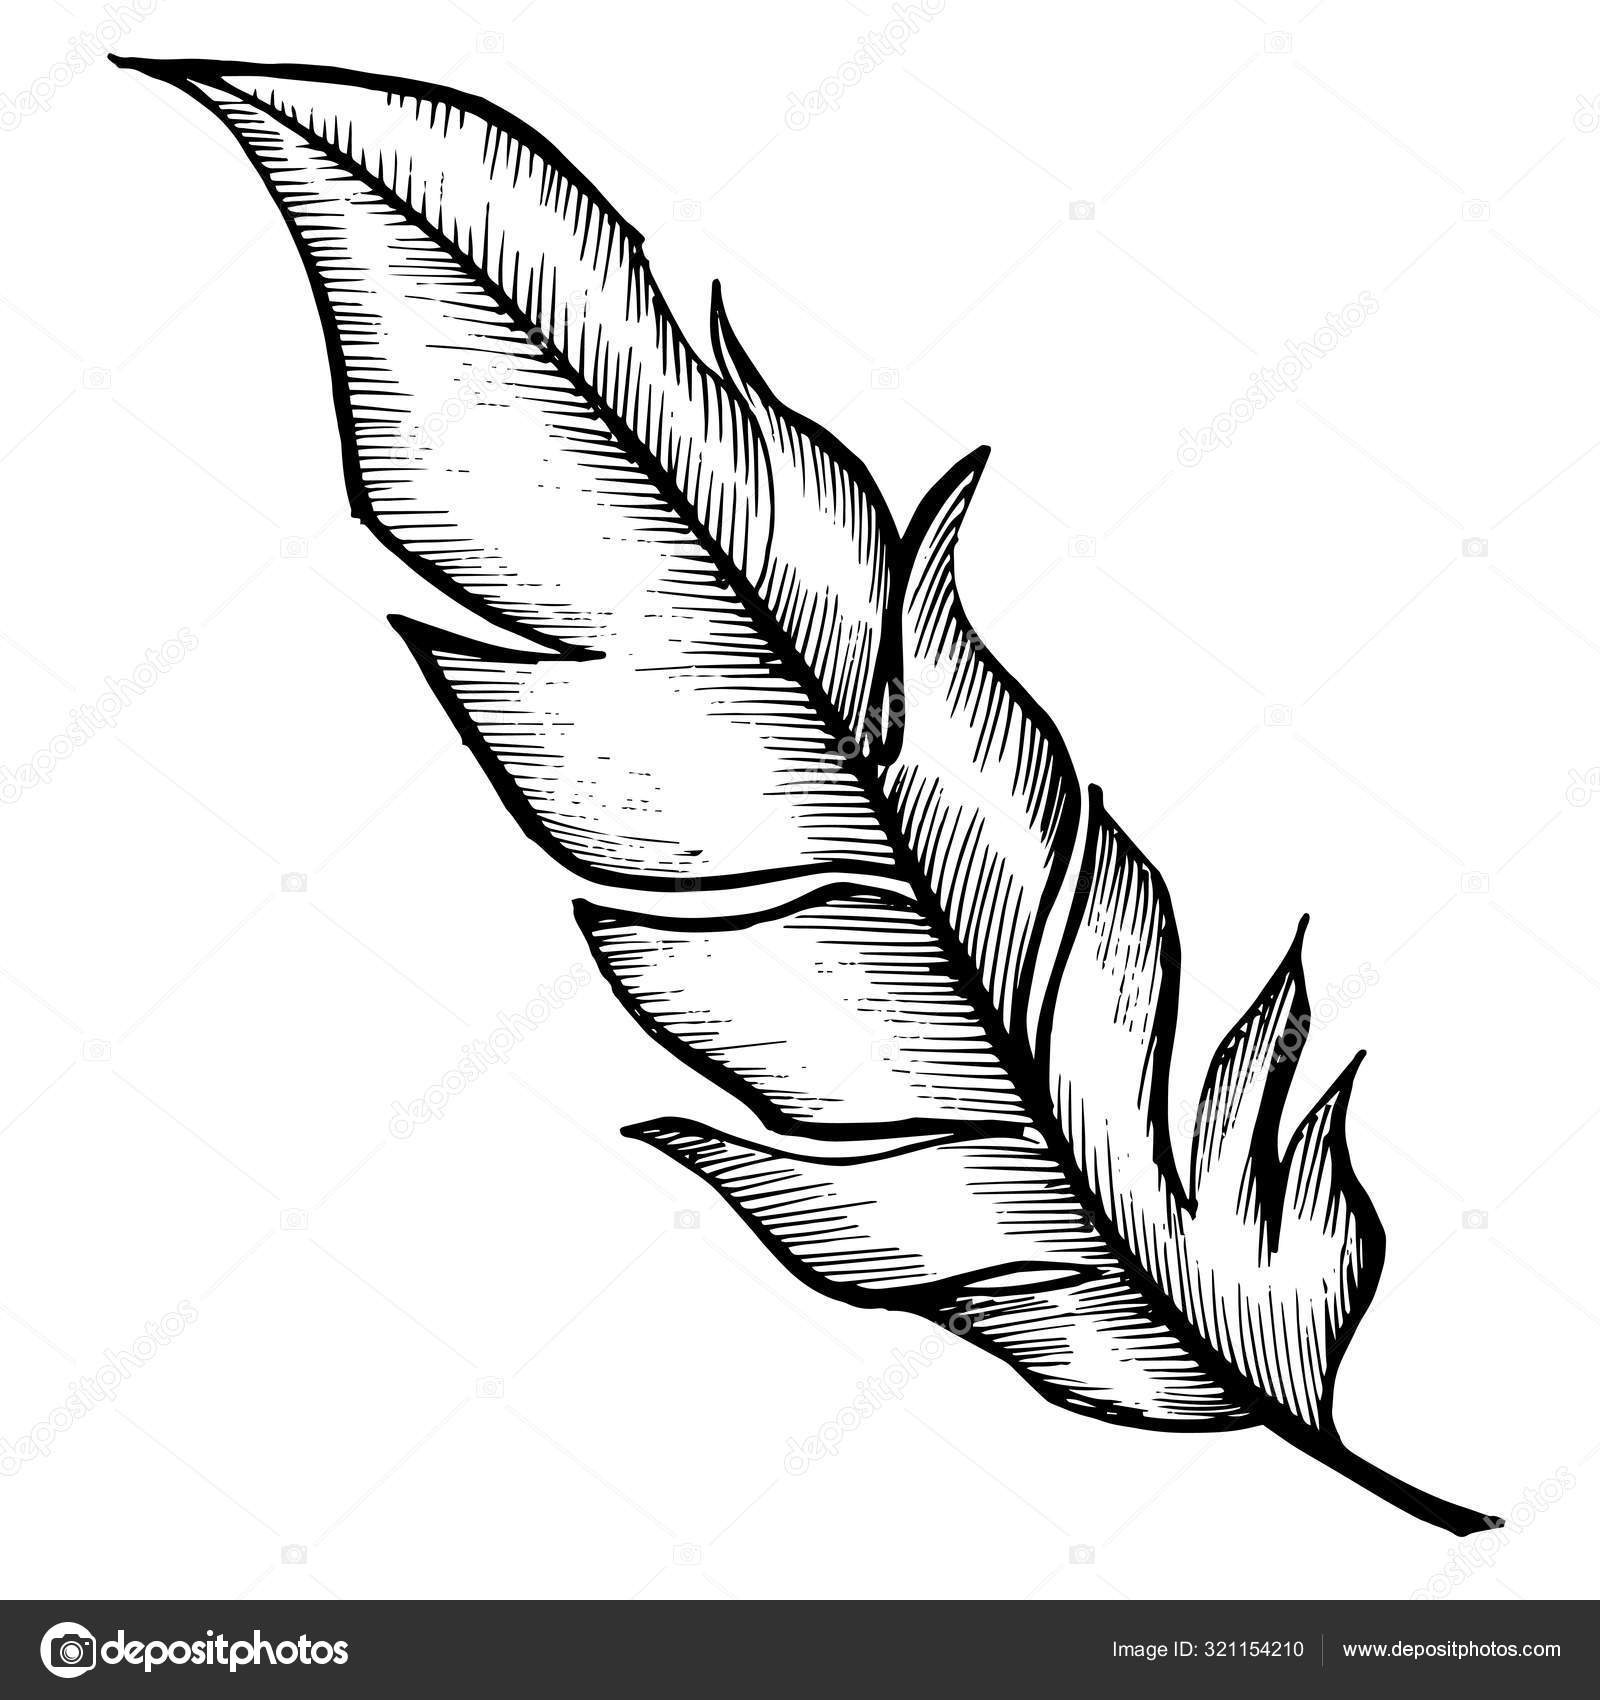 Imagen gratis: Textura de las plumas blancas en el ala del ave